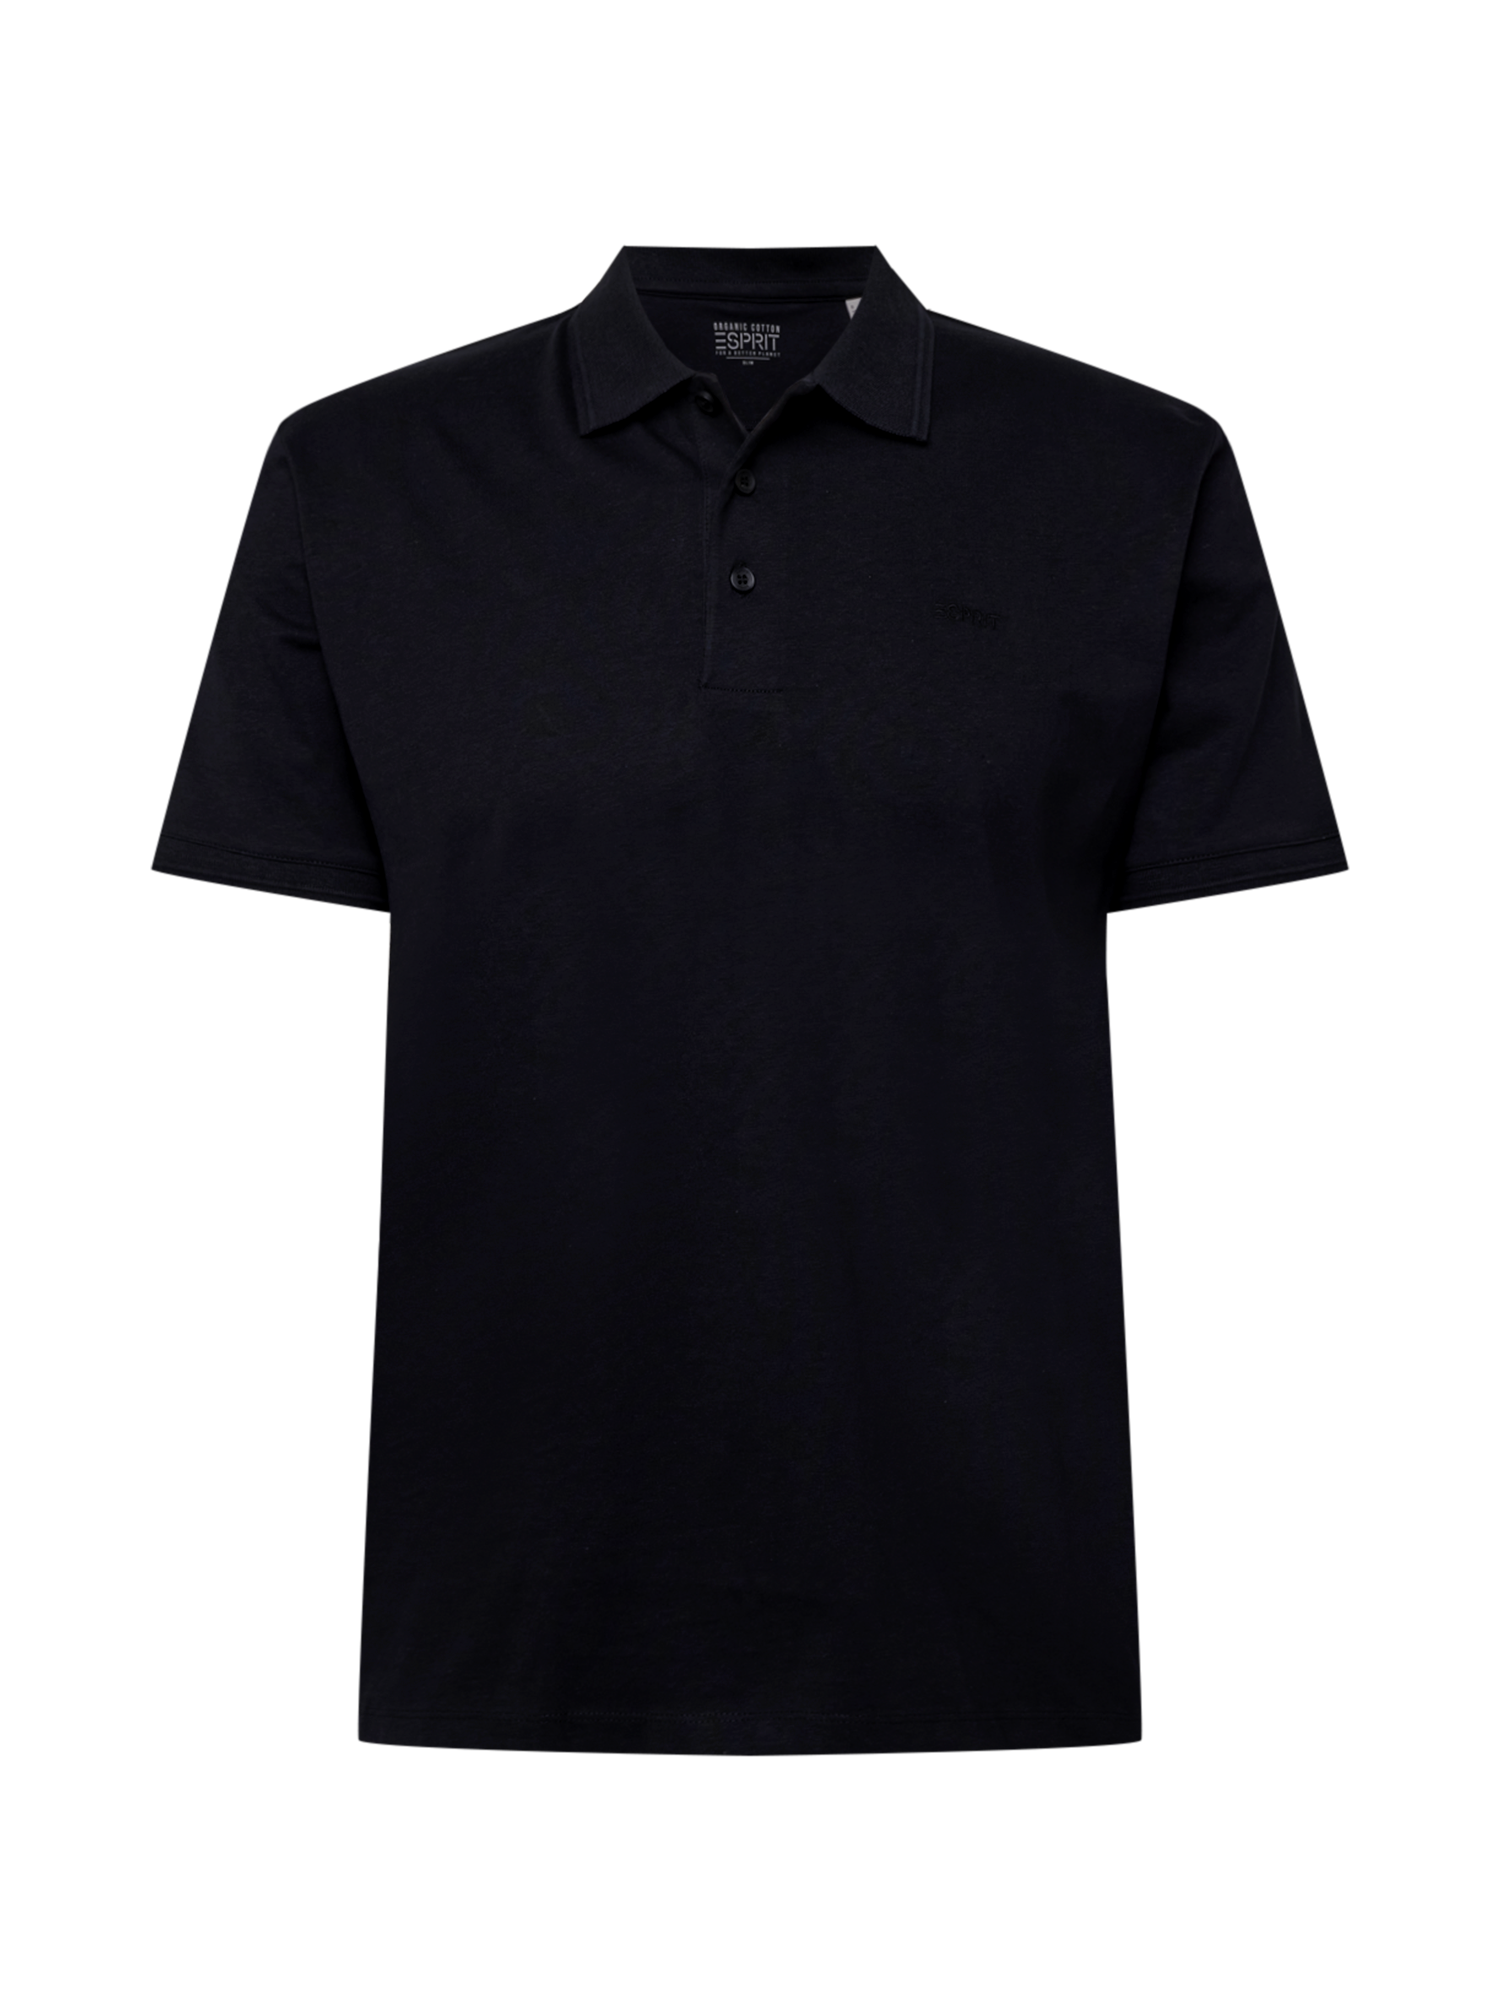 nPyli Bardziej zrównoważony ESPRIT Koszulka w kolorze Czarnym 